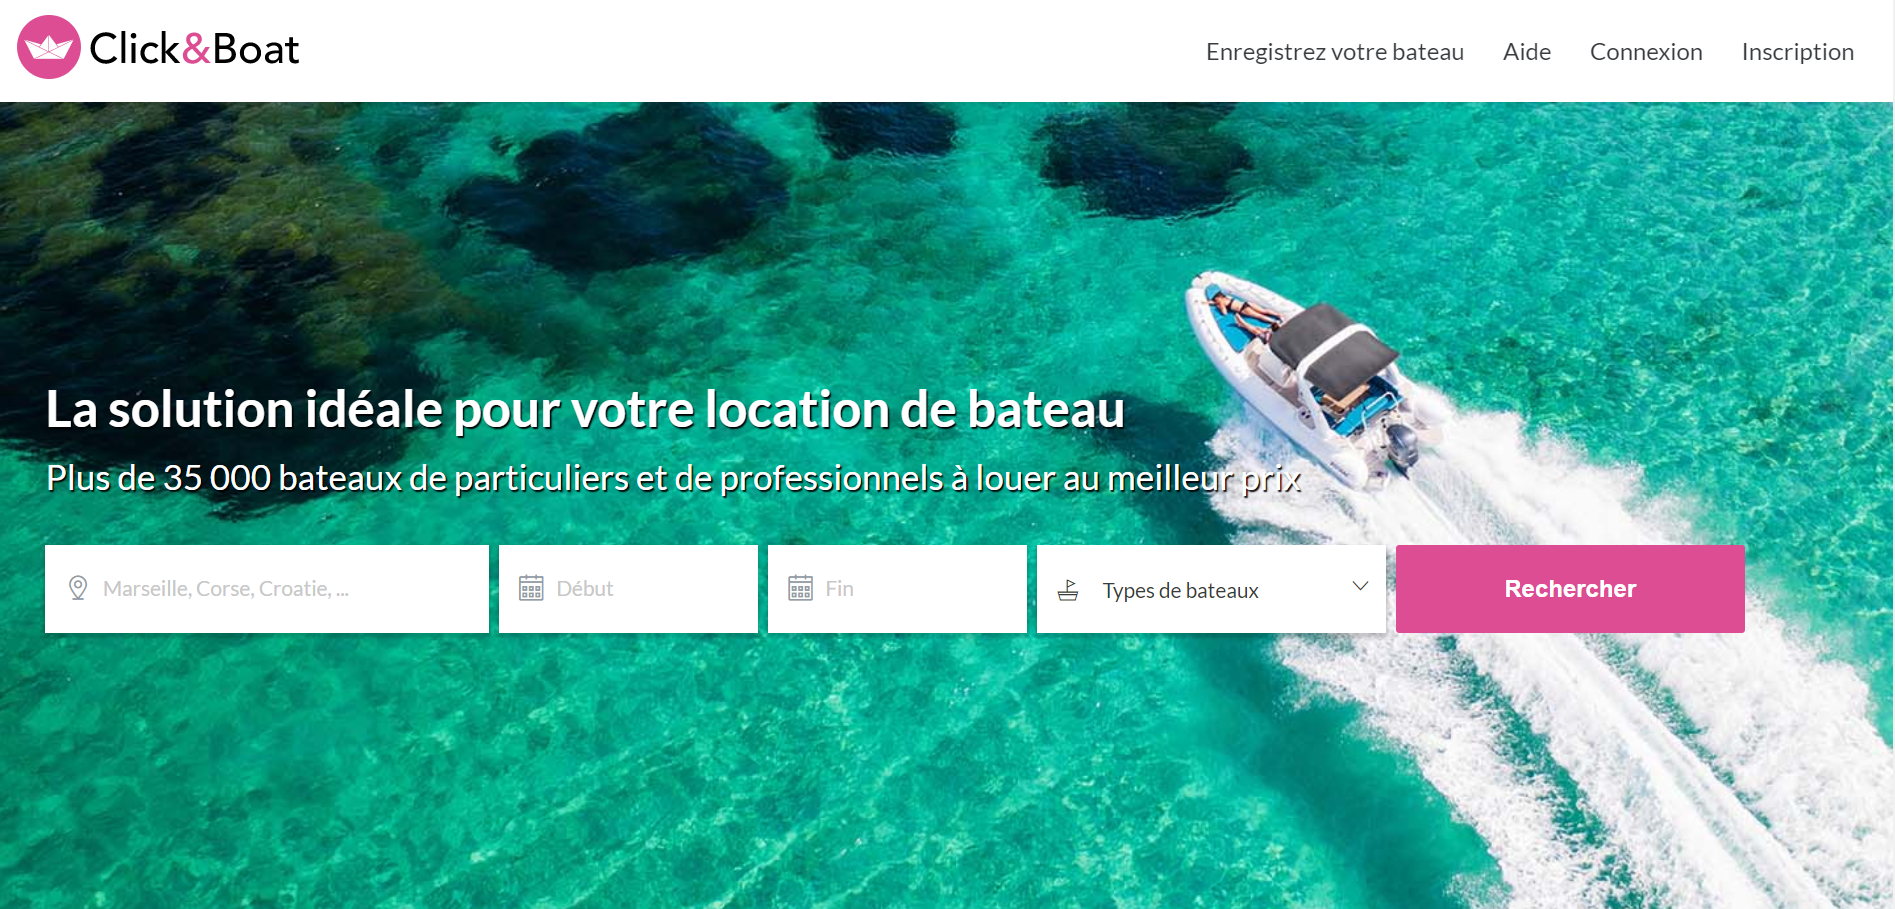 “游艇界的Airbnb”疫情中逆势扩张：法国游艇租赁公司Click & Boat收购西班牙同行